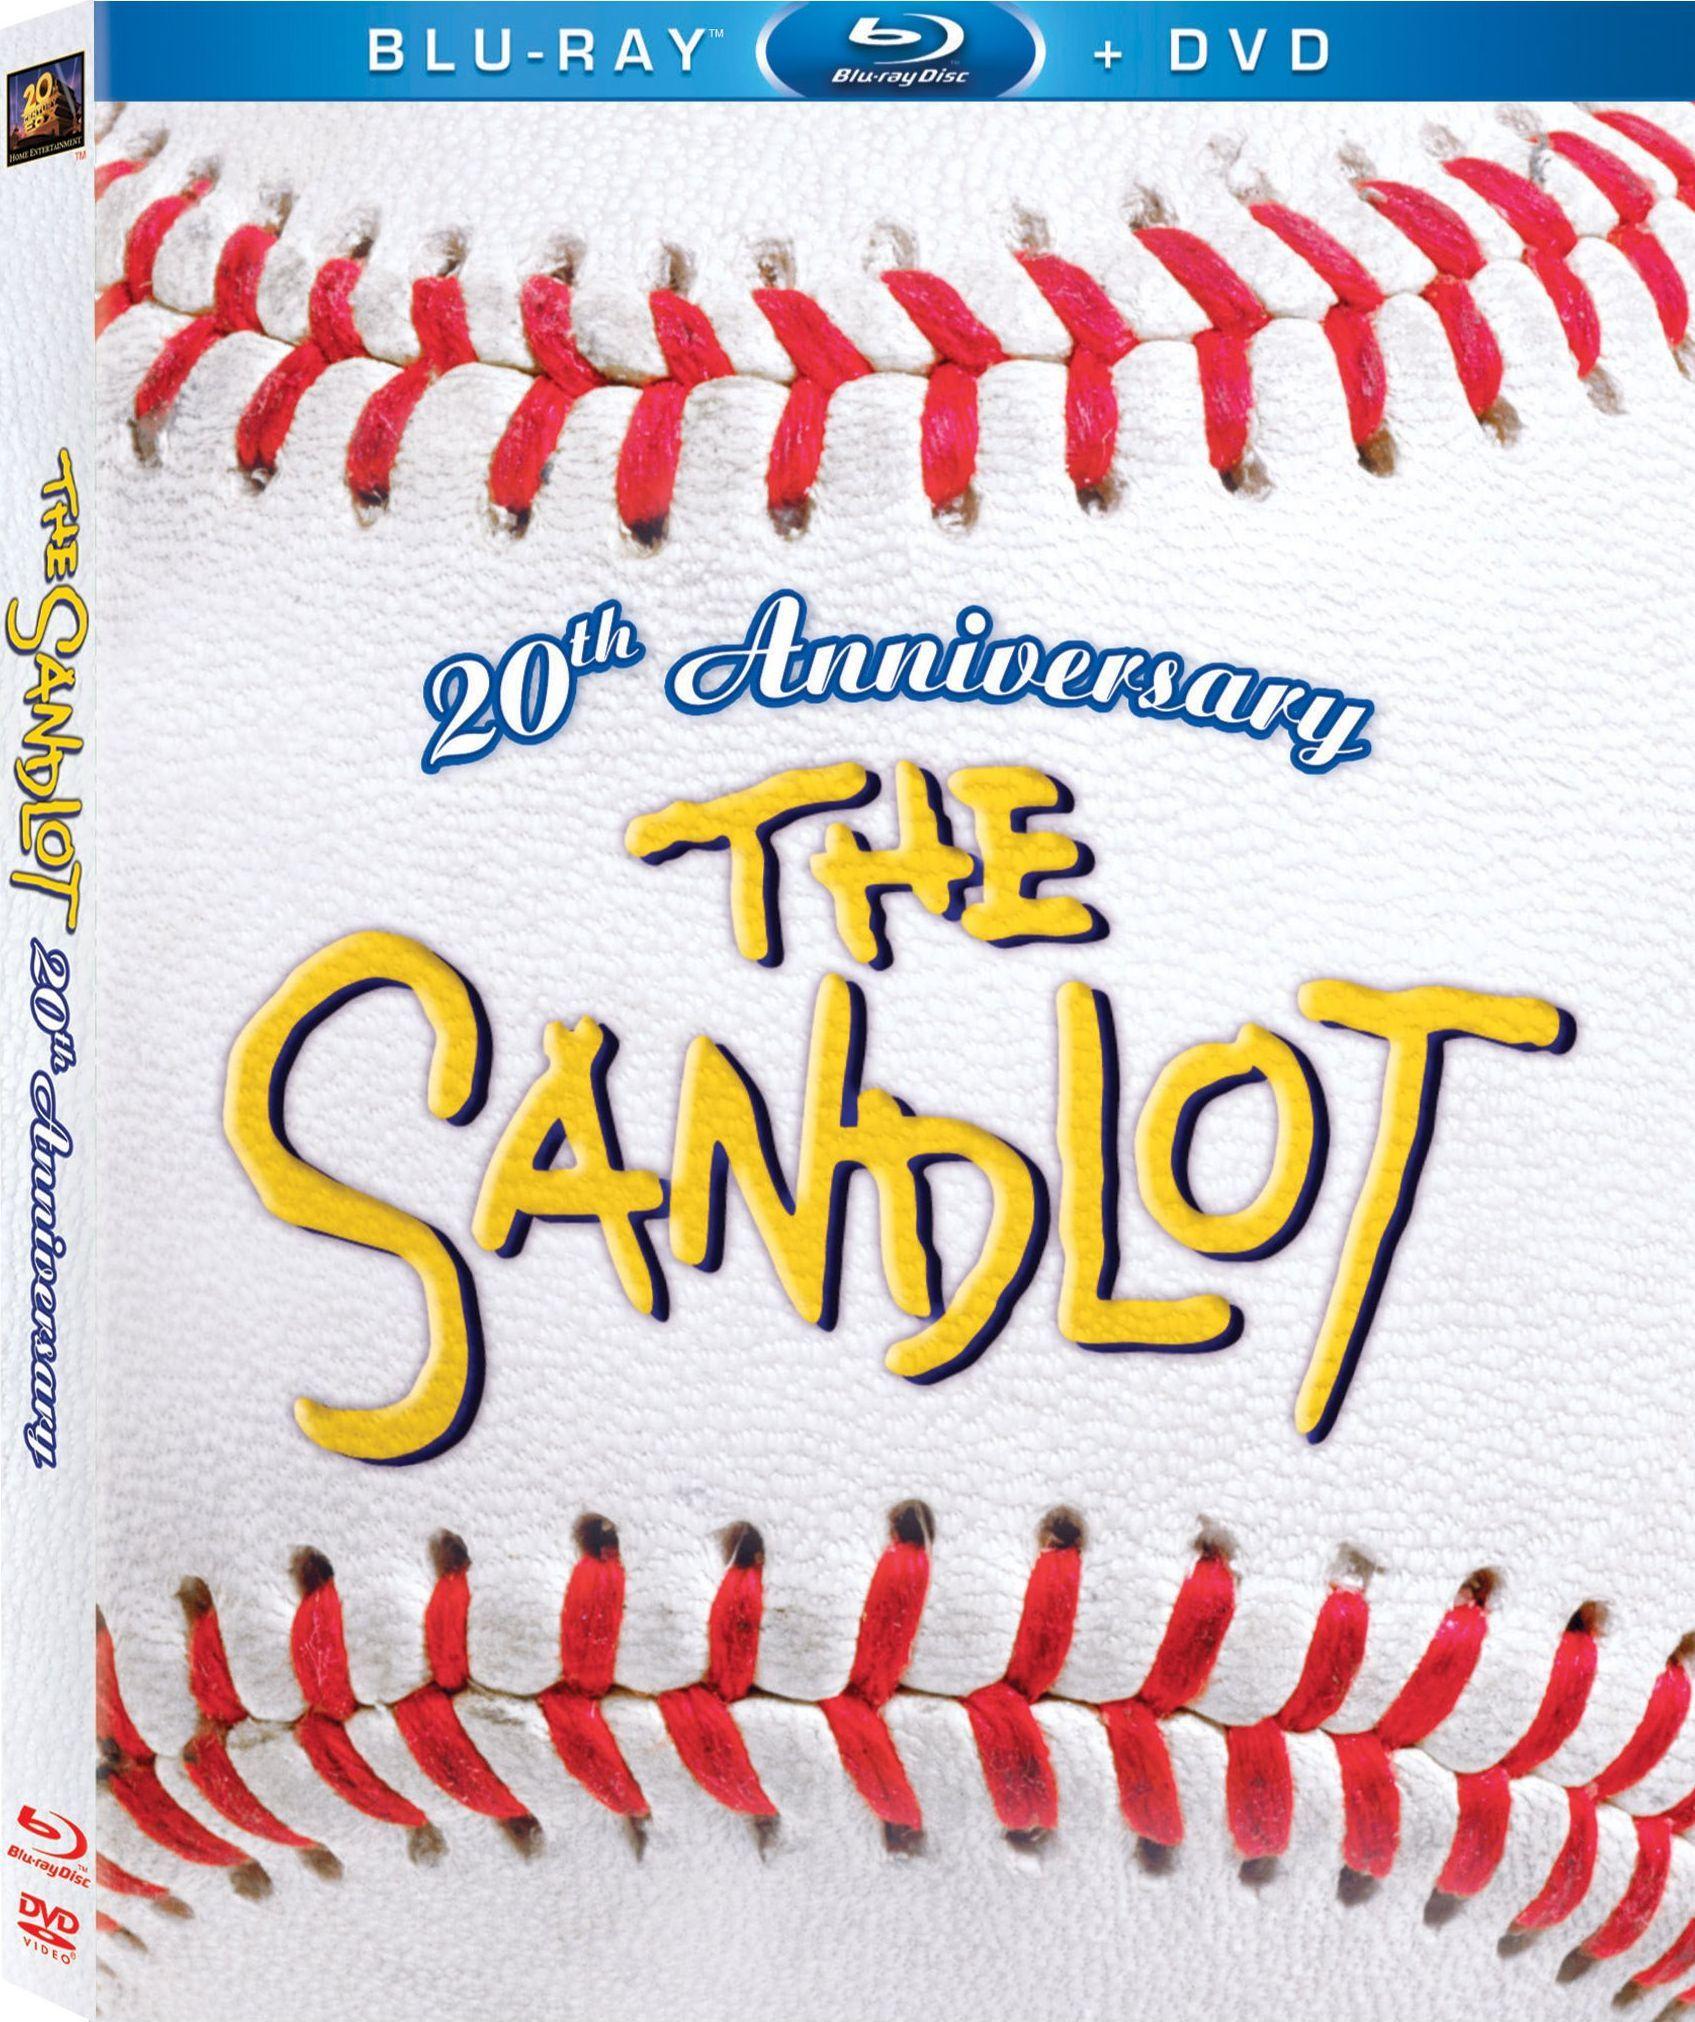 Sandlot Softball Logo - The Sandlot DVD Release Date